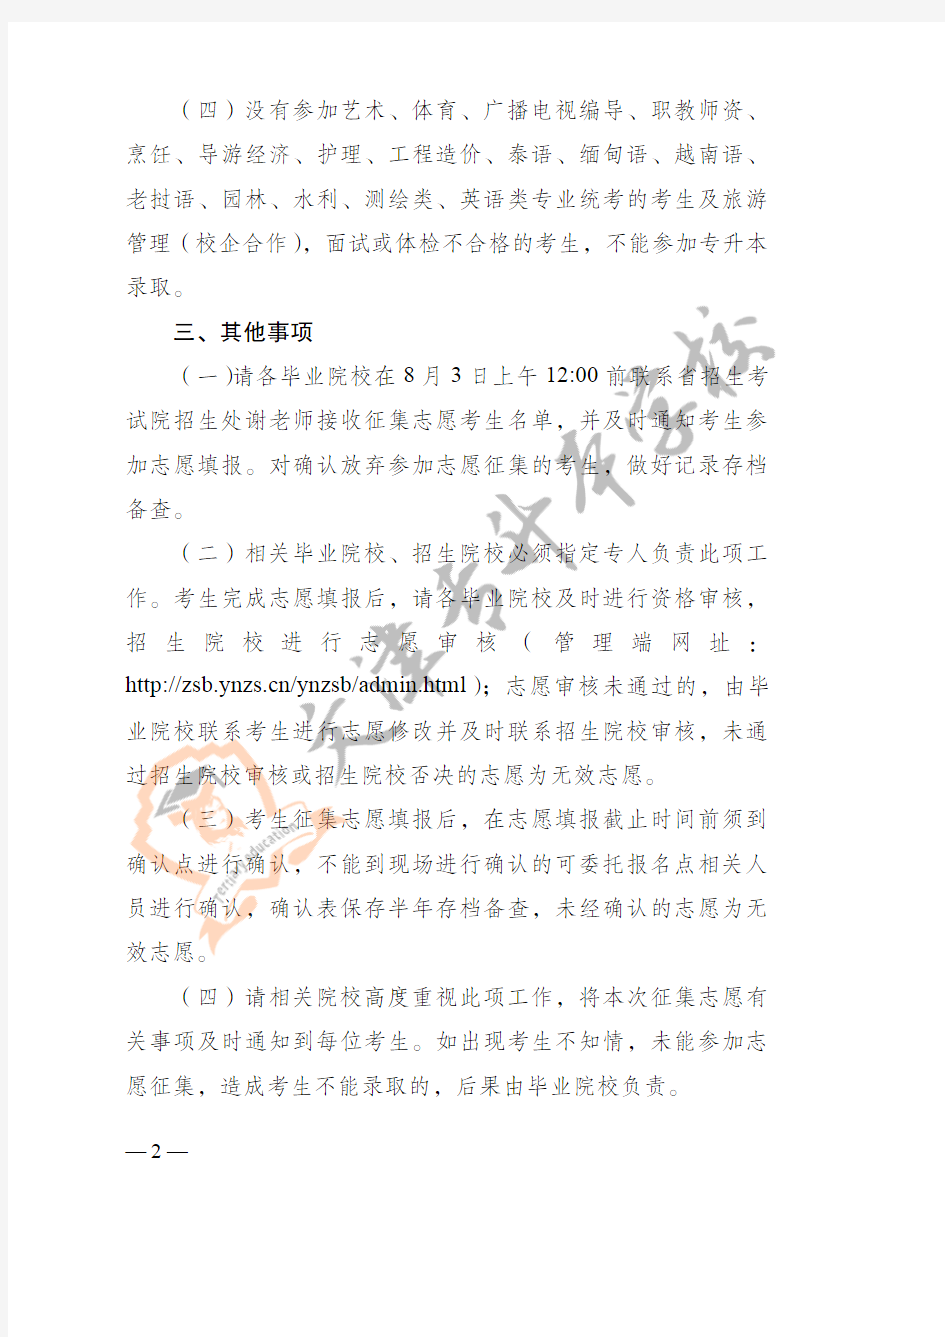 云南省招生考试院关于2020年普通高等院校专升本录取普通批次征集志愿的通知(红头) (1)